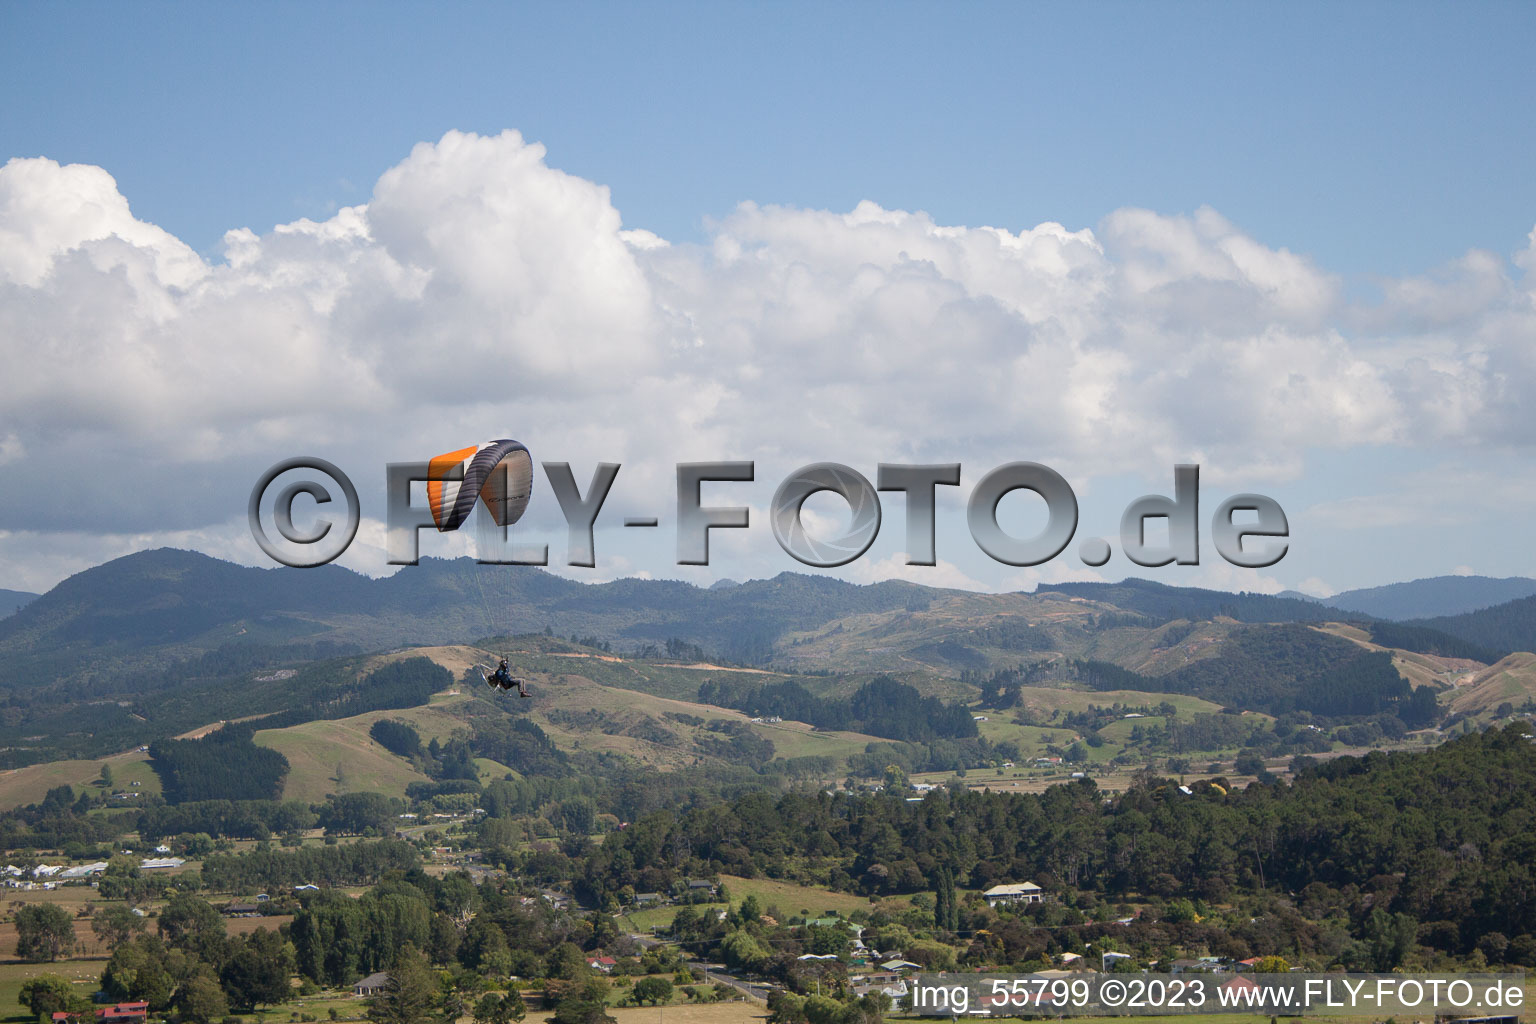 Coromandel dans le département Waïkato, Nouvelle-Zélande du point de vue du drone